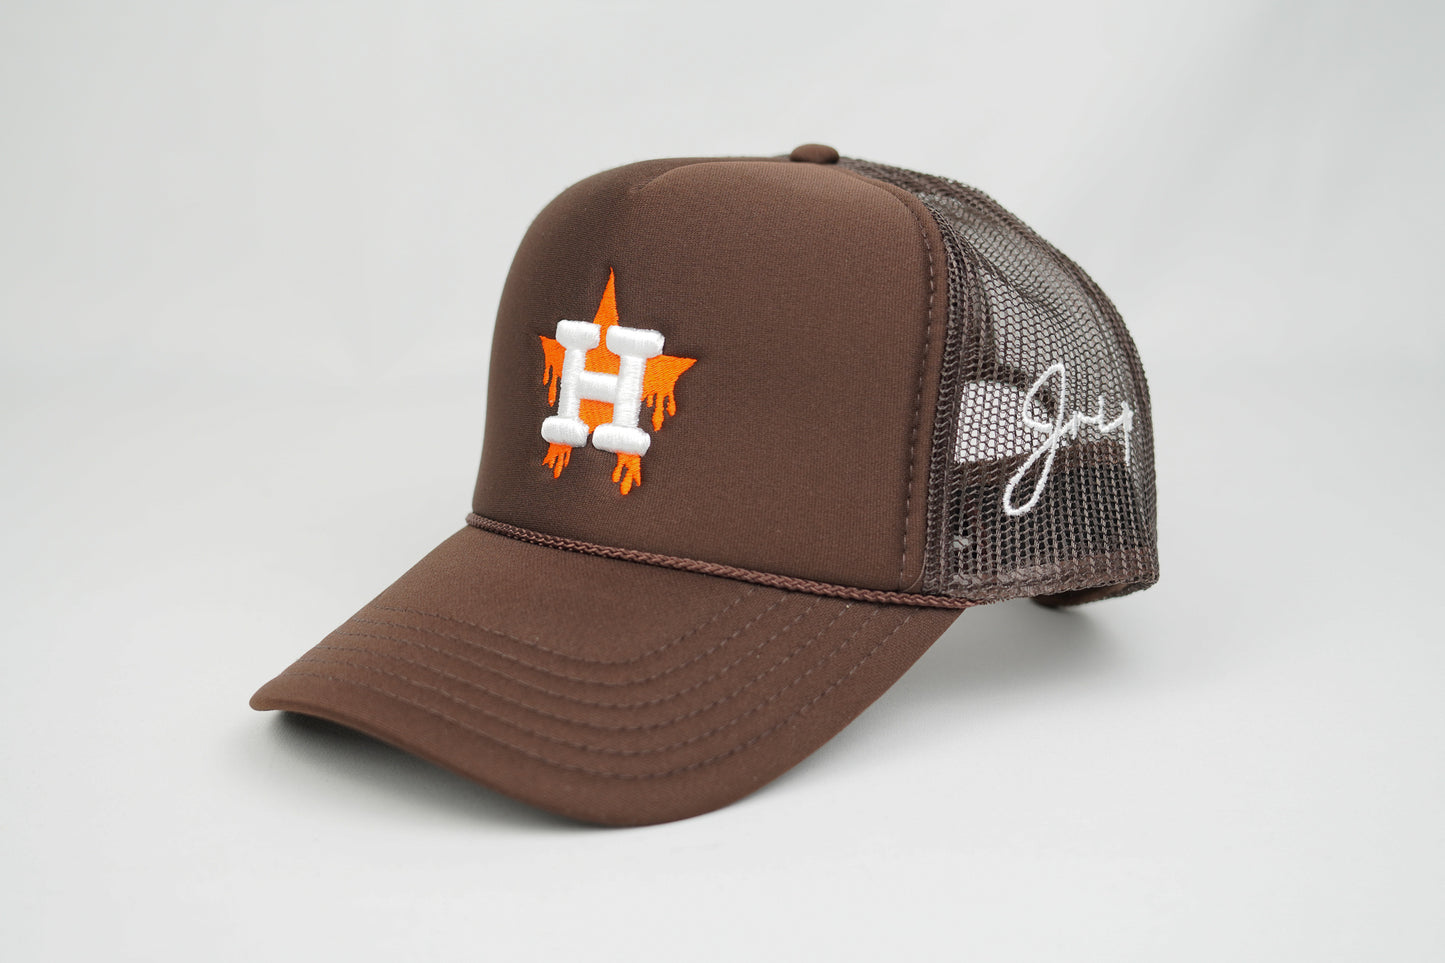 H-Town Dripping Trucker Hat (BROWN)